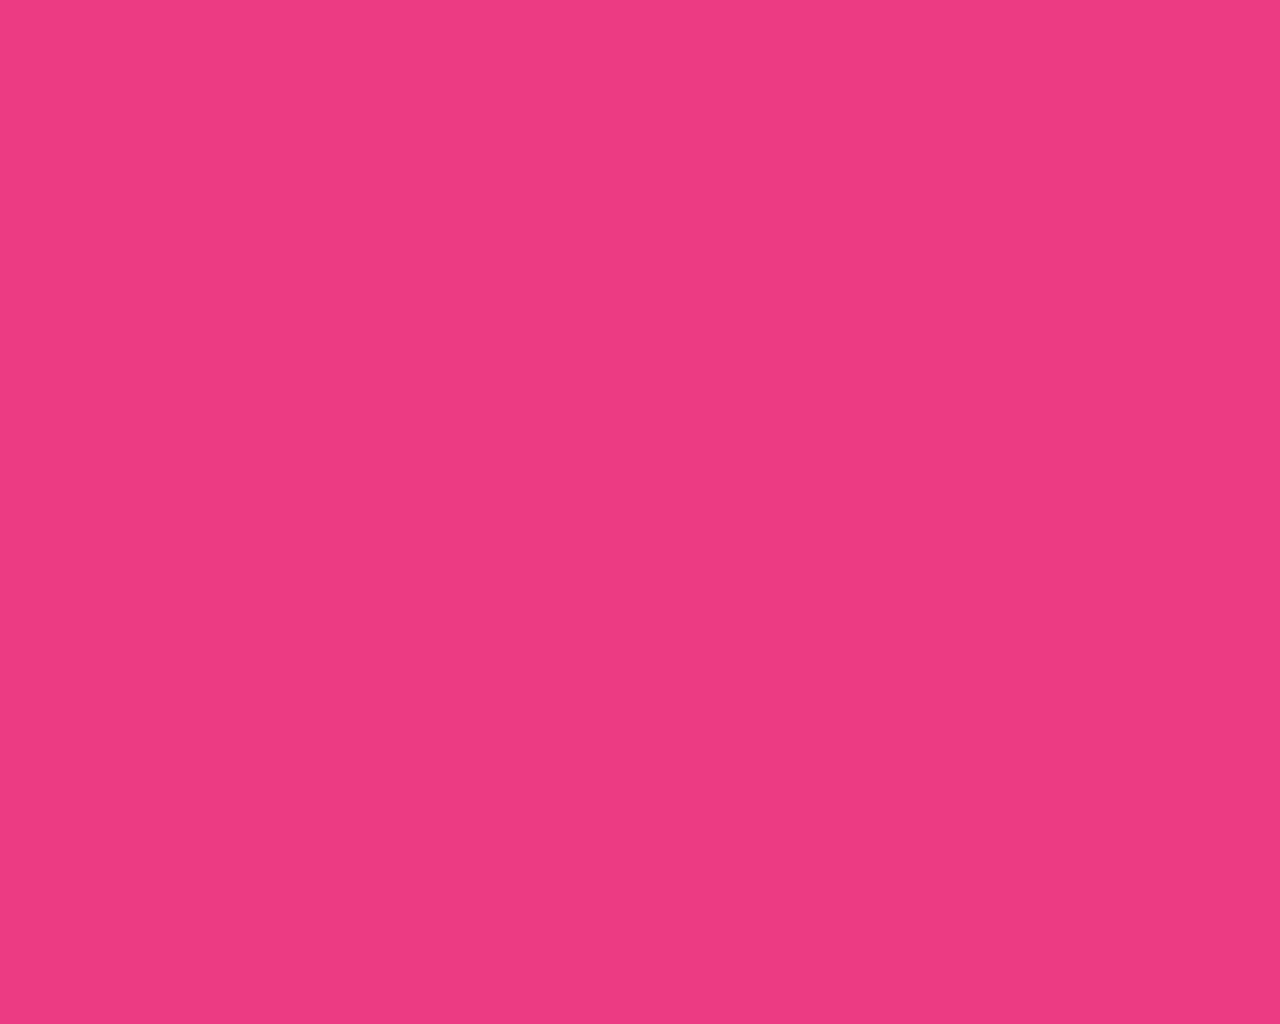 1280x1024-cerise-pink-solid-color-background.jpg